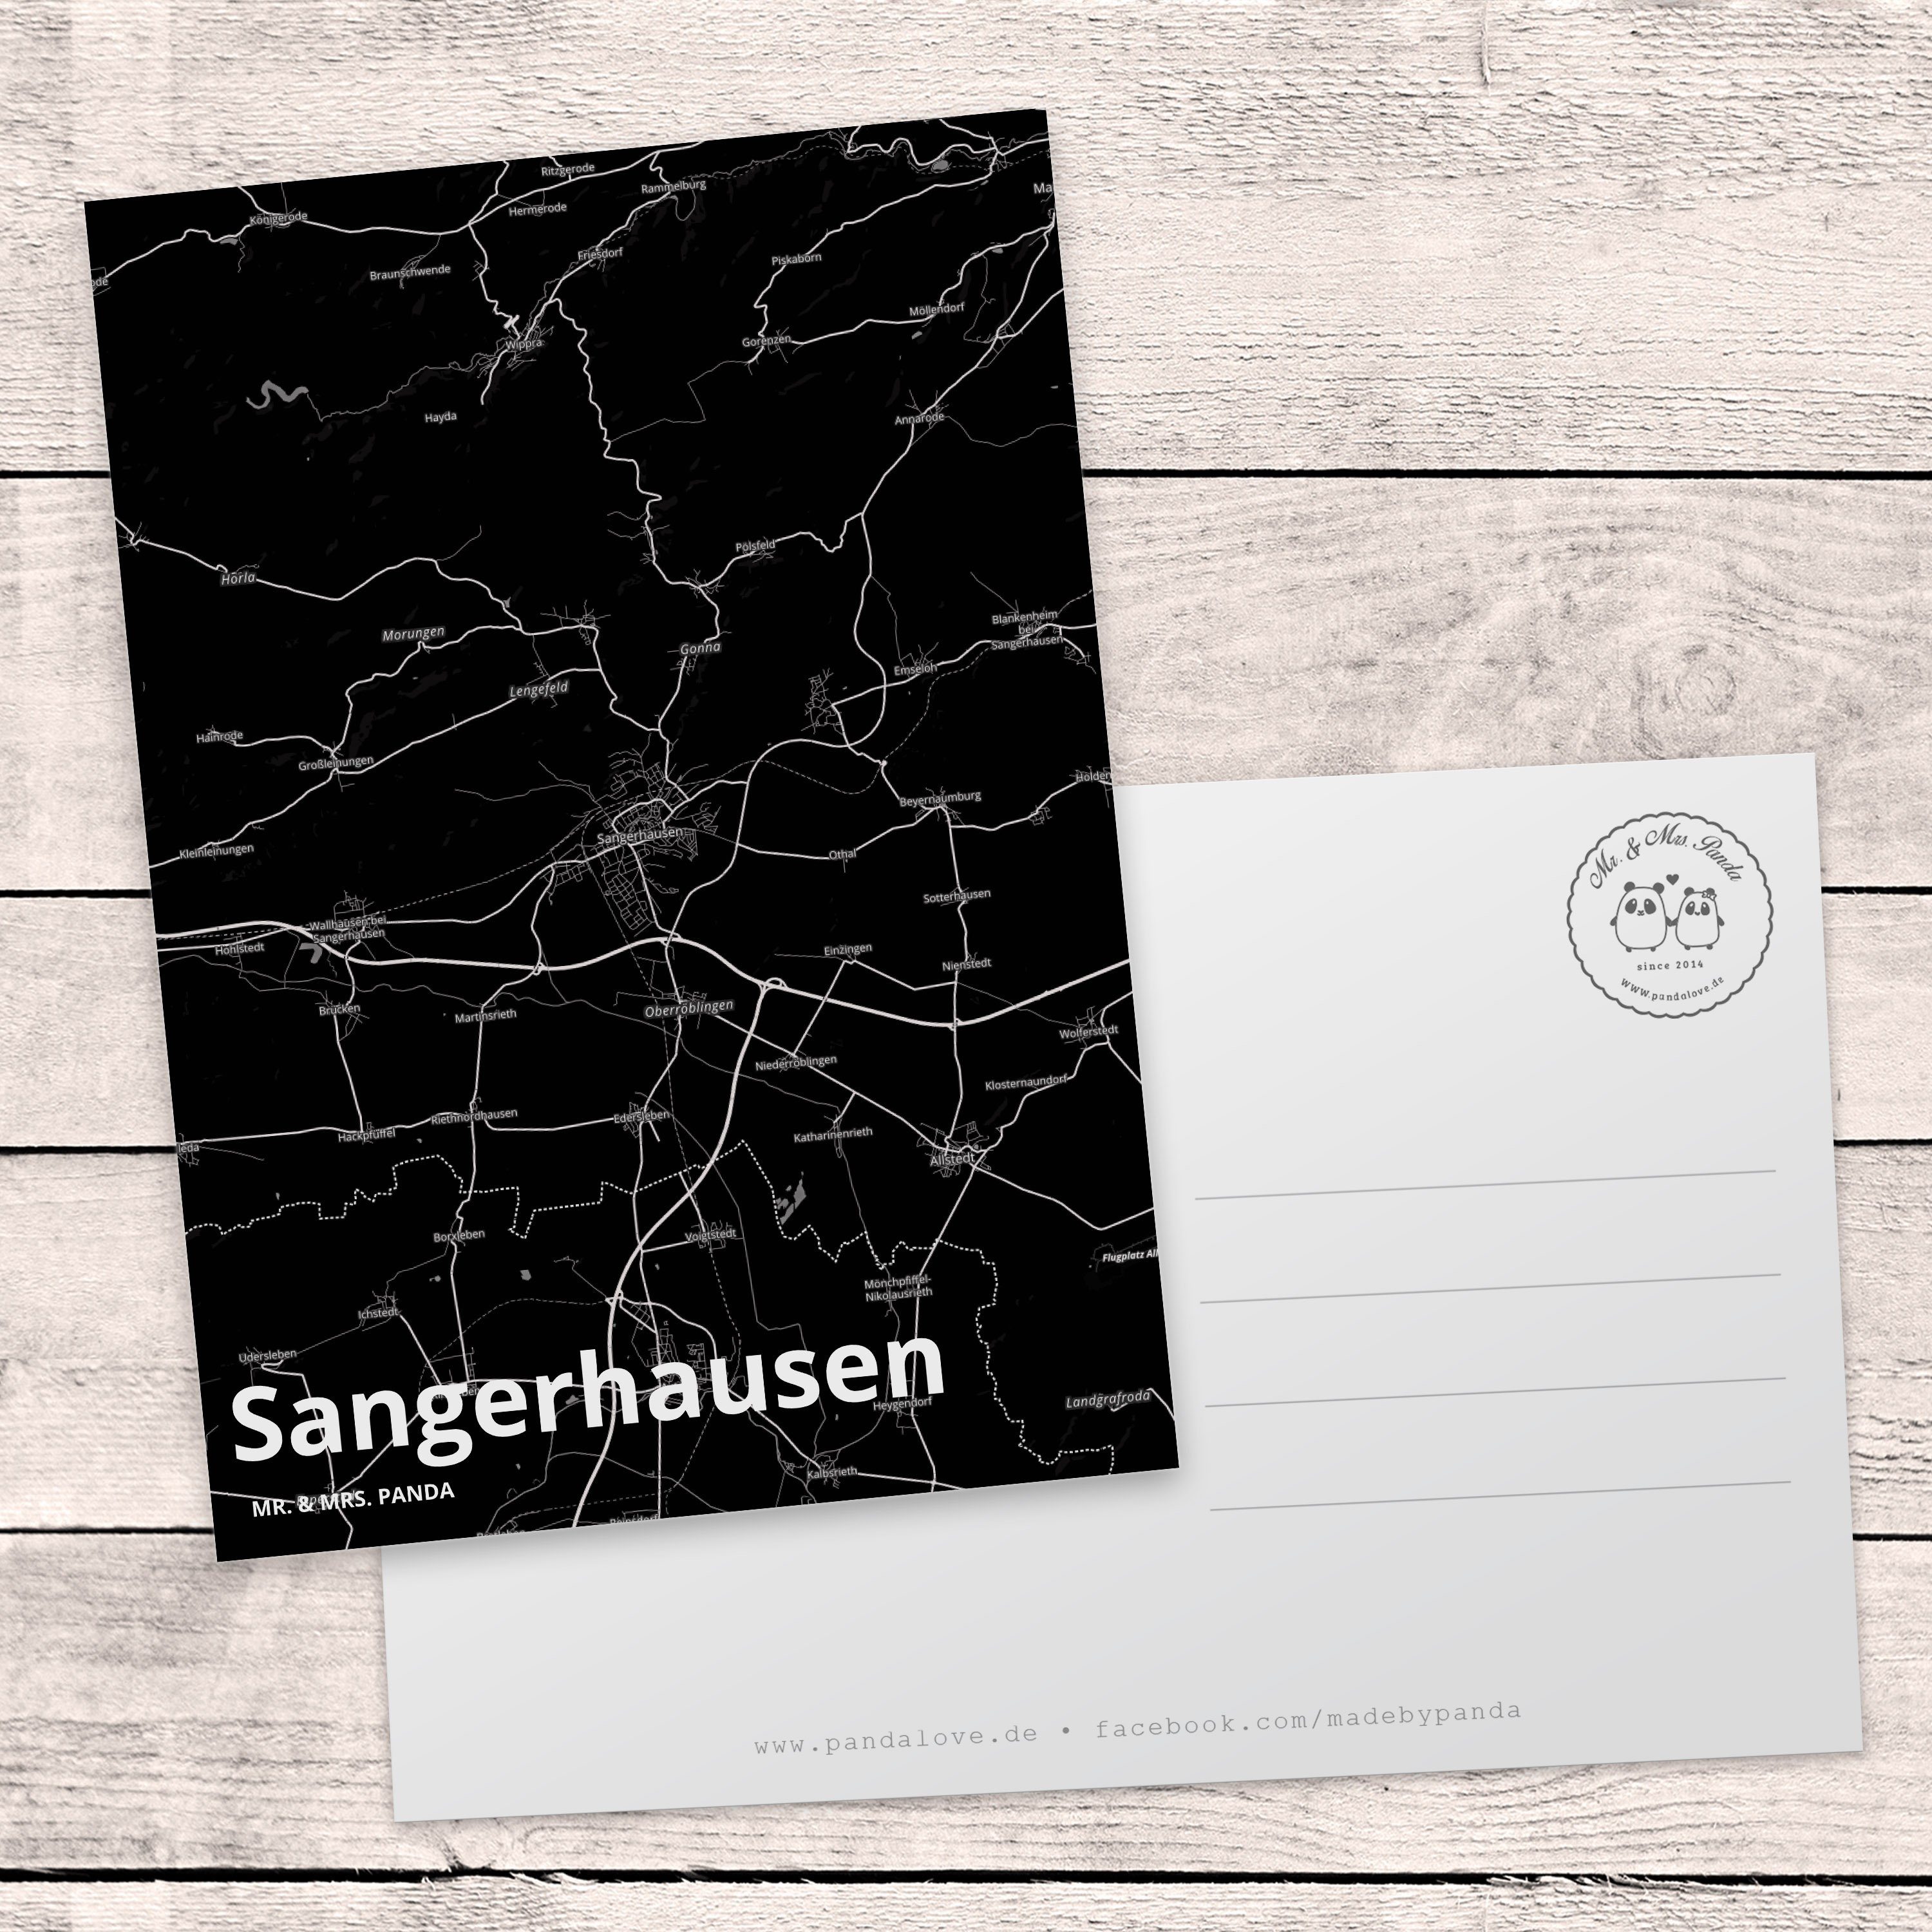 Mr. & Mrs. Panda Karte, Ort, Geschenk, Stadt, Geschenkkarte Grußkarte, Sangerhausen Postkarte 